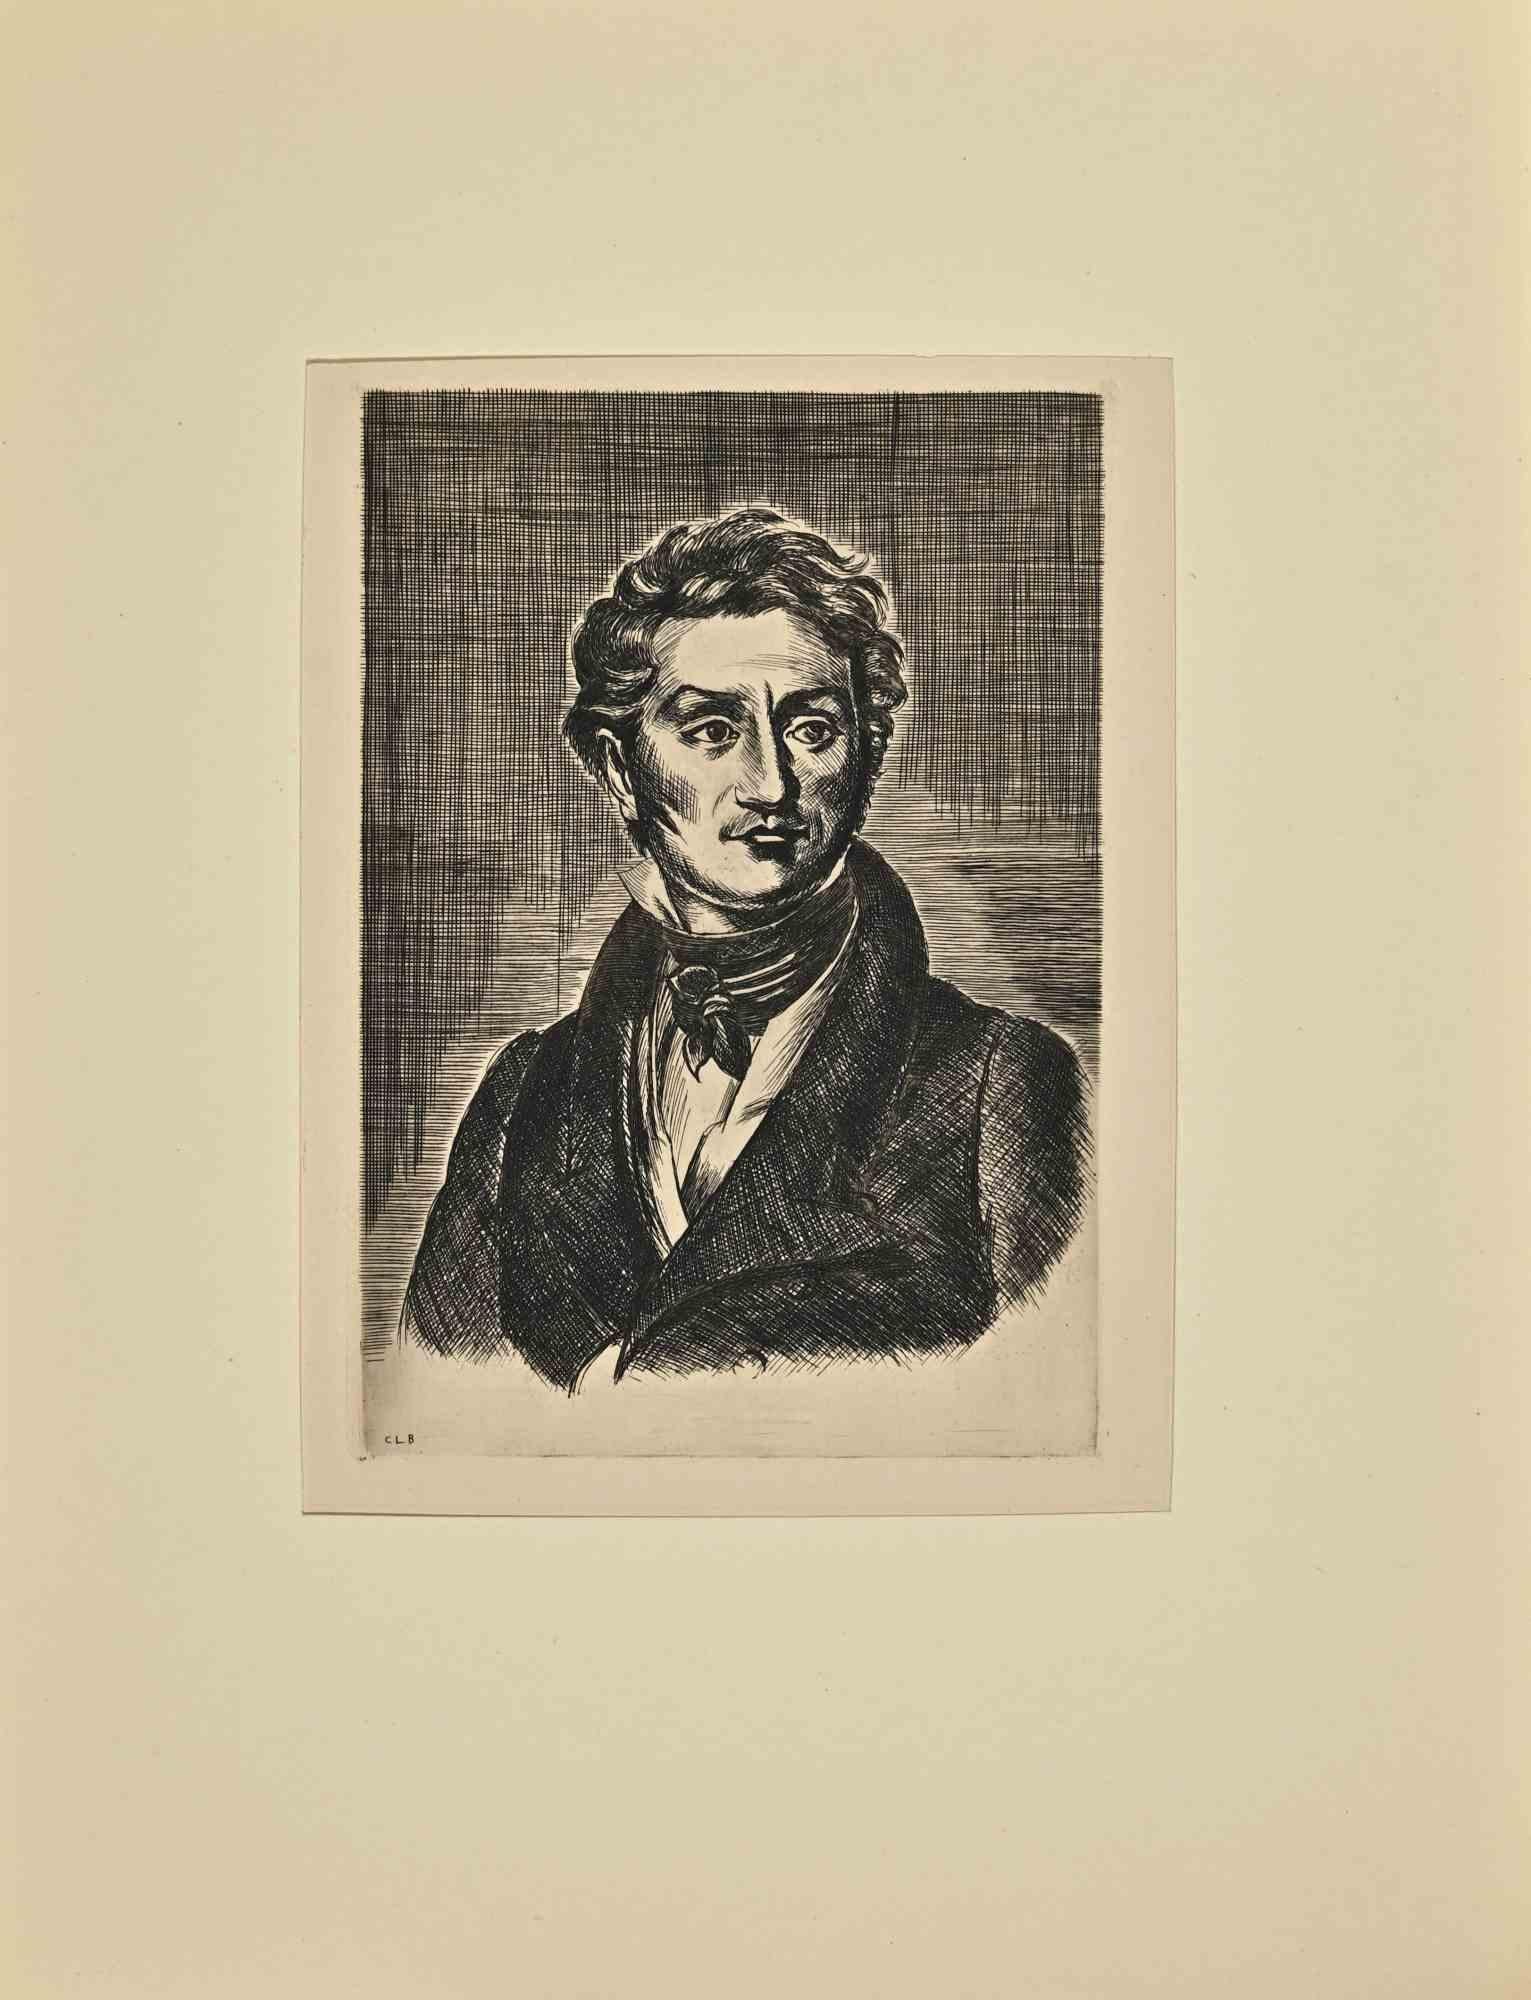 Das Porträt von Charles Nodier ist eine Radierung von Constant Le Breton aus dem frühen 20.

Gute Bedingungen.

Monogramme auf dem Teller.

Das Kunstwerk wird durch weiche, kurze Striche meisterhaft dargestellt.